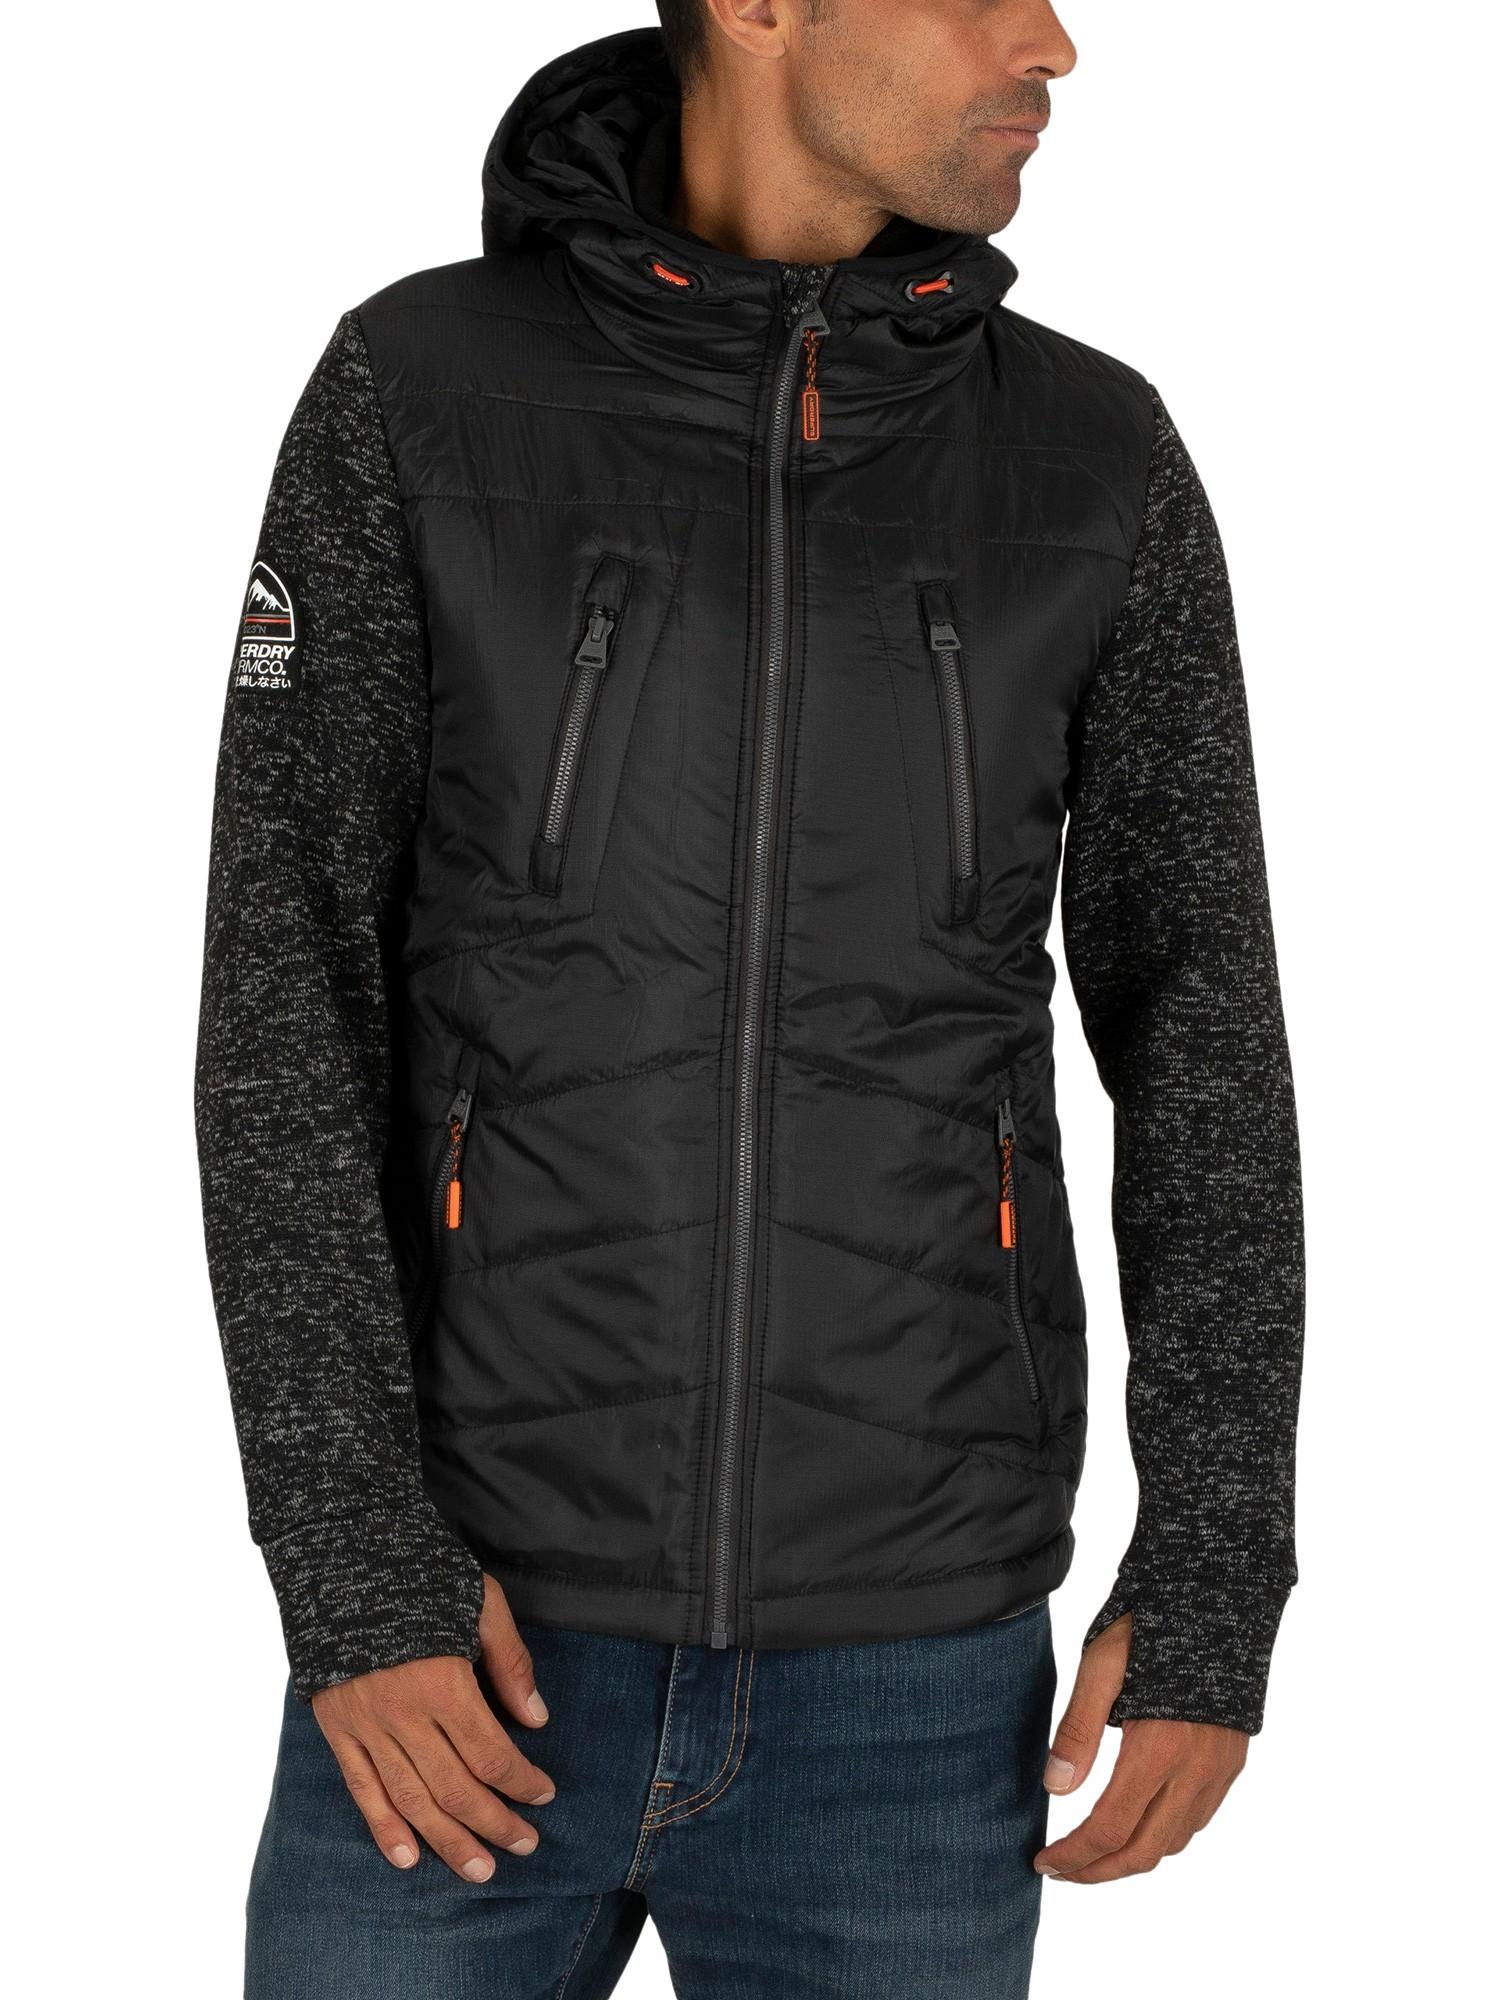 Superdry Rubber Storm Hybrid Zip Jacket in Black for Men - Lyst